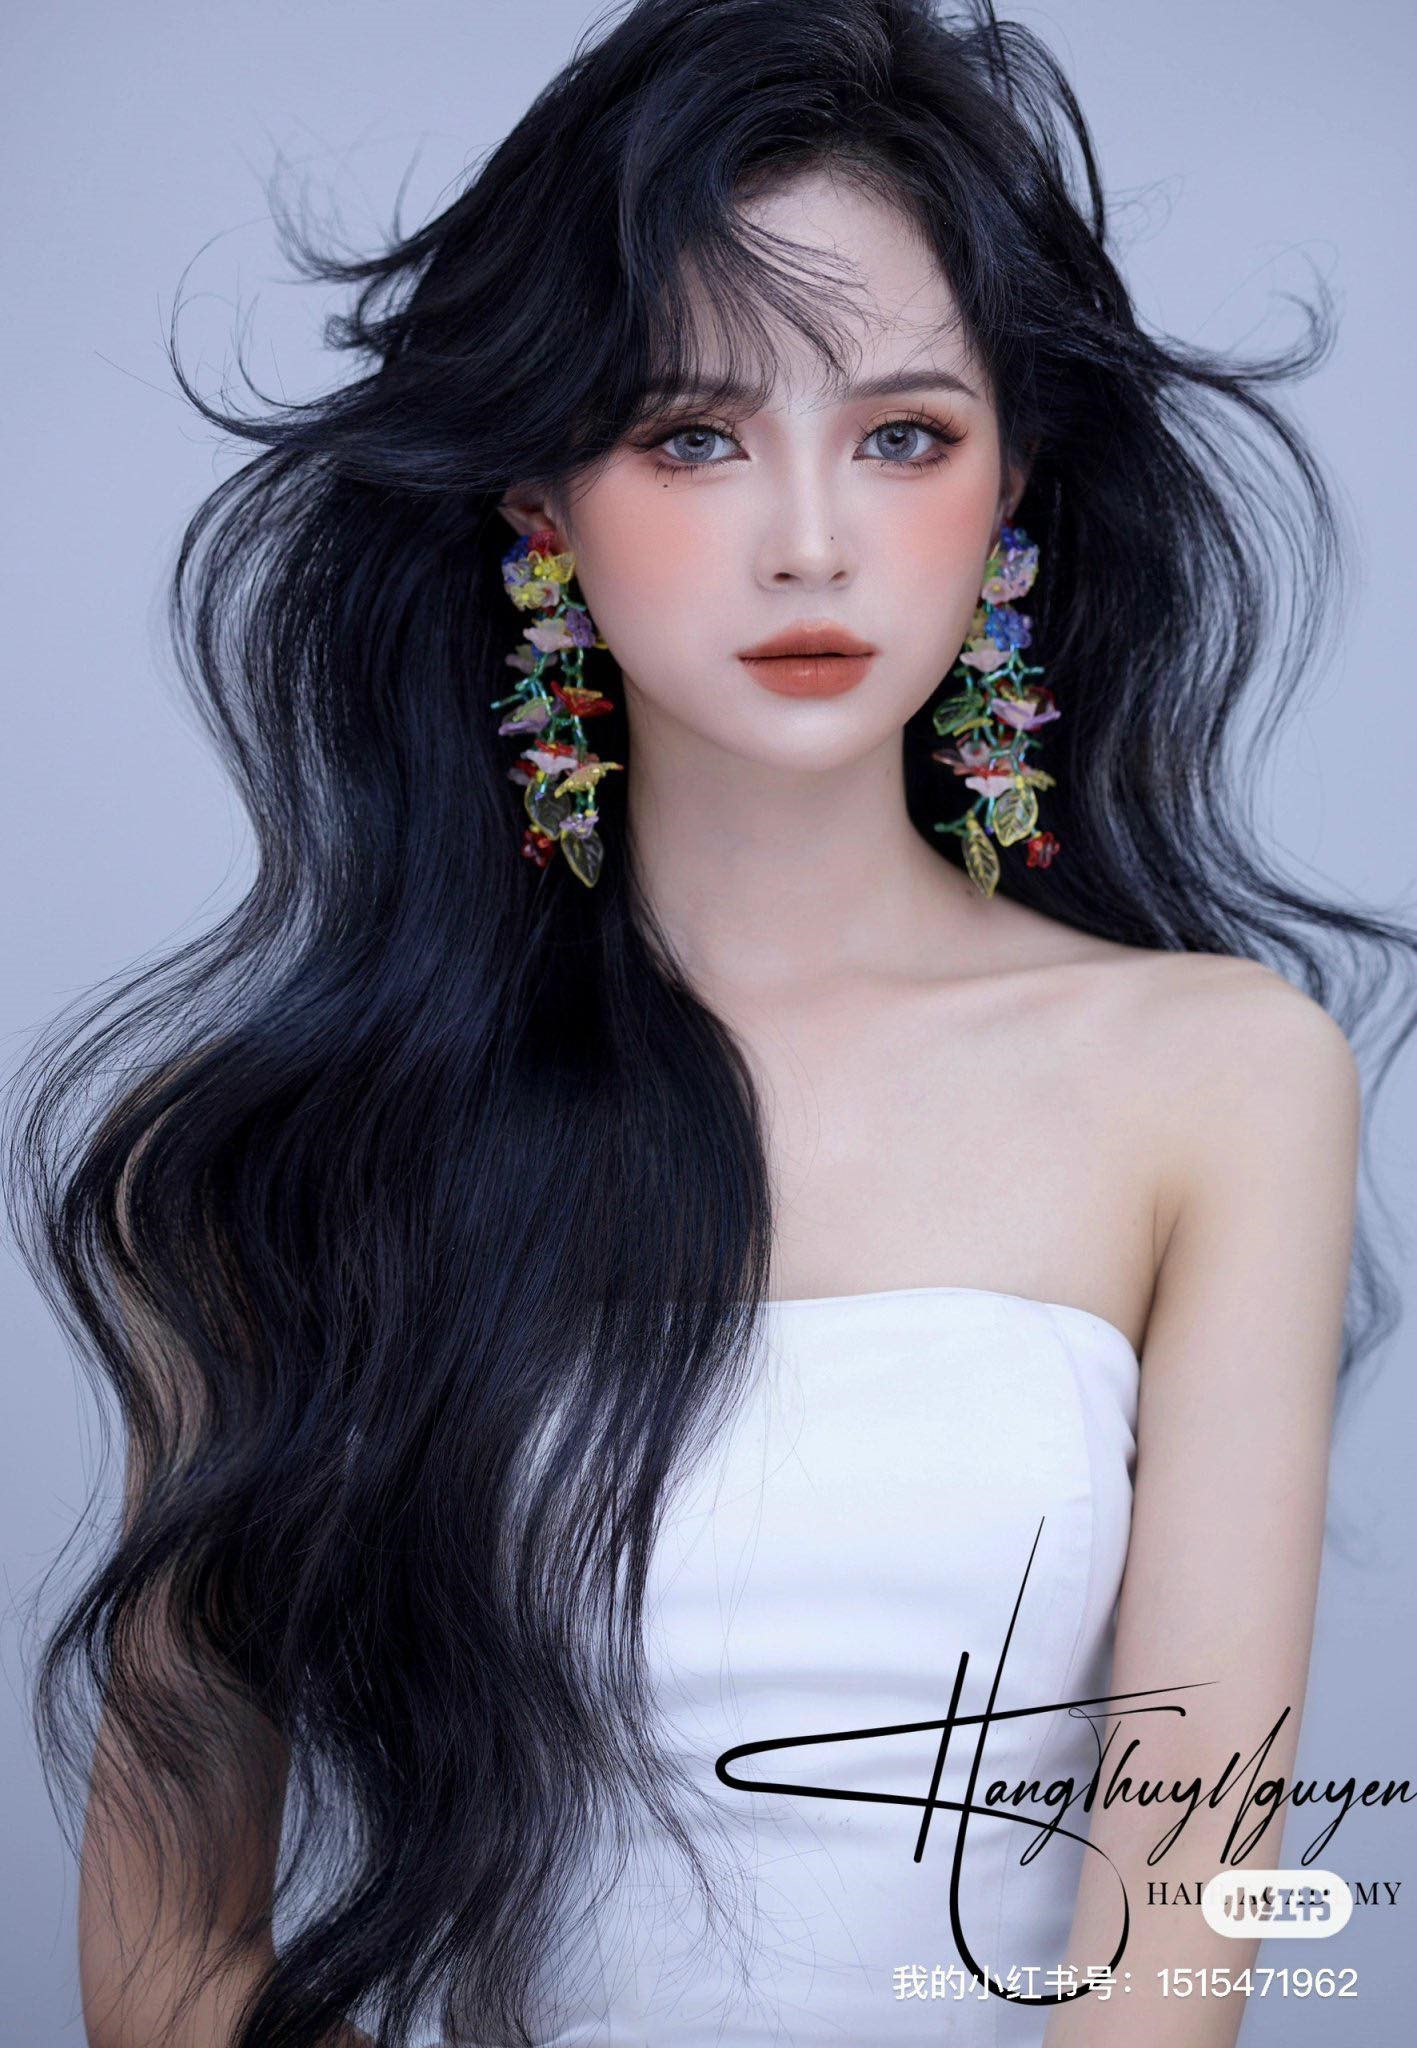 Nguyễn Thúy Hằng: Nhà tạo mẫu tóc chuyên nghiệp đam mê truyền cảm hứng - ảnh 3